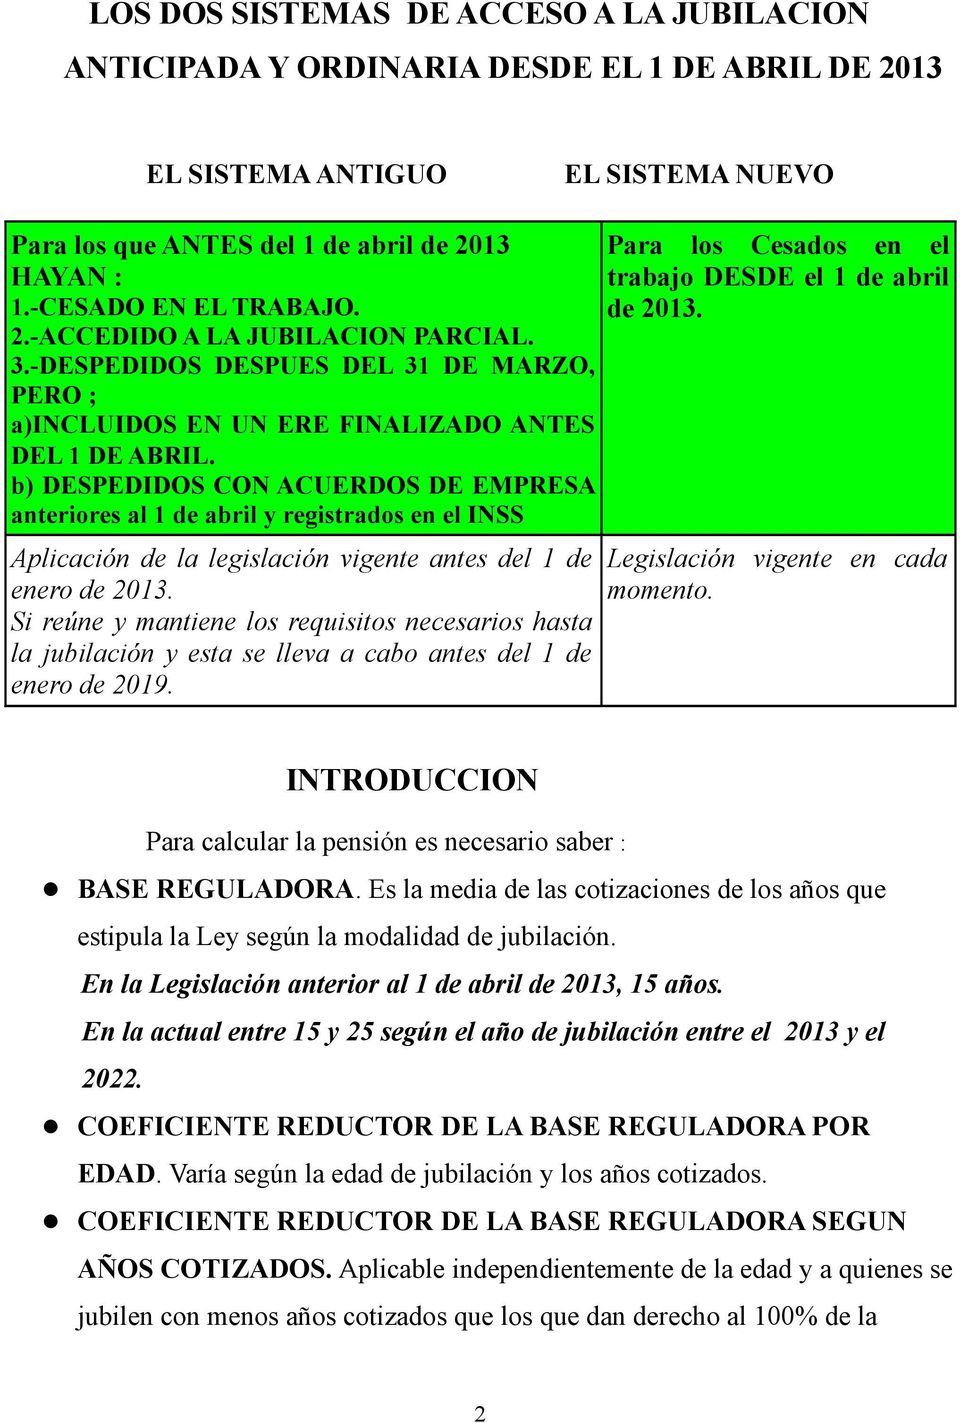 b) DESPEDIDOS CON ACUERDOS DE EMPRESA anteriores al 1 de abril y registrados en el INSS Aplicación de la legislación vigente antes del 1 de enero de 2013.